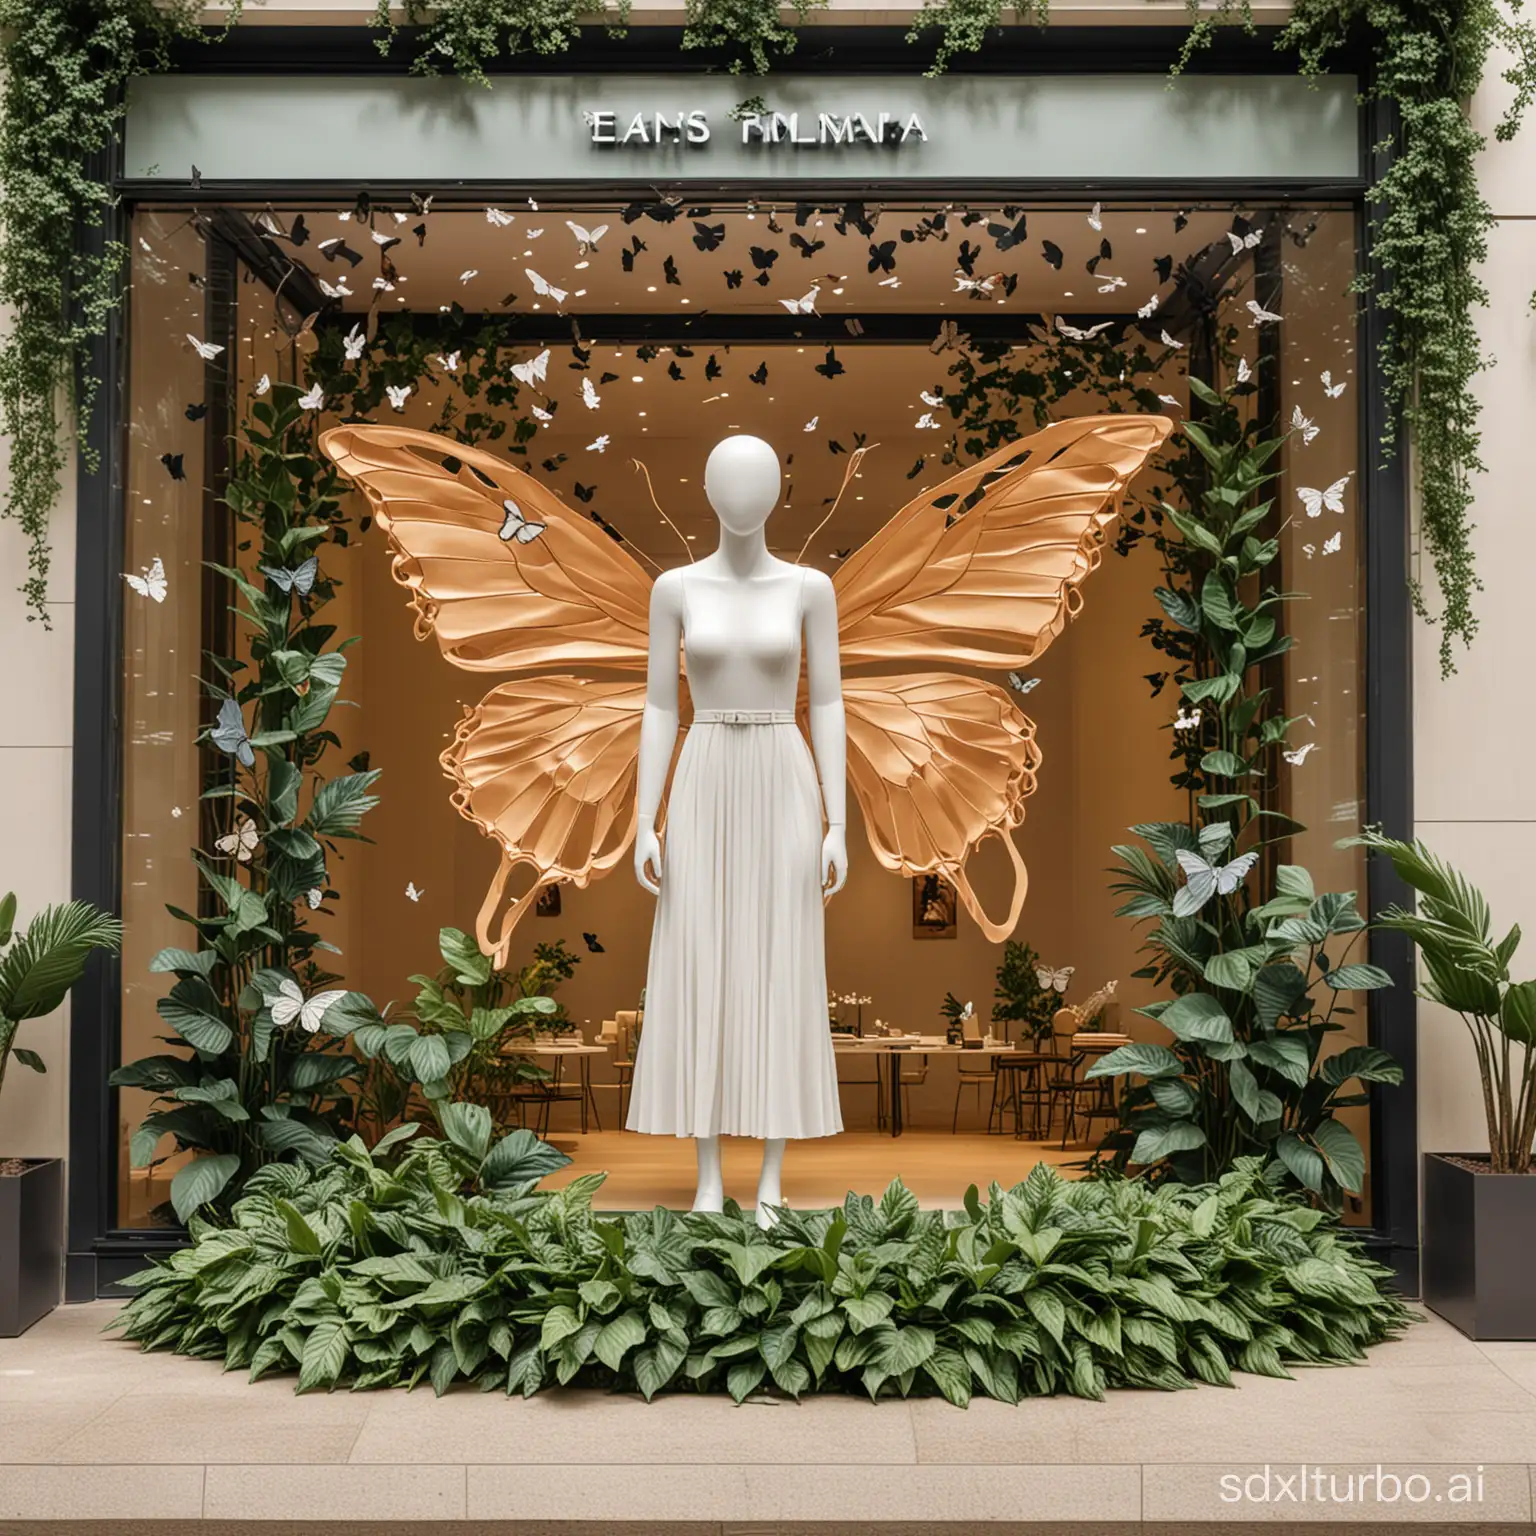 一个商场女装店铺的橱窗，中间有巨大蝴蝶造型和叶片环绕在模特周围，造型简约